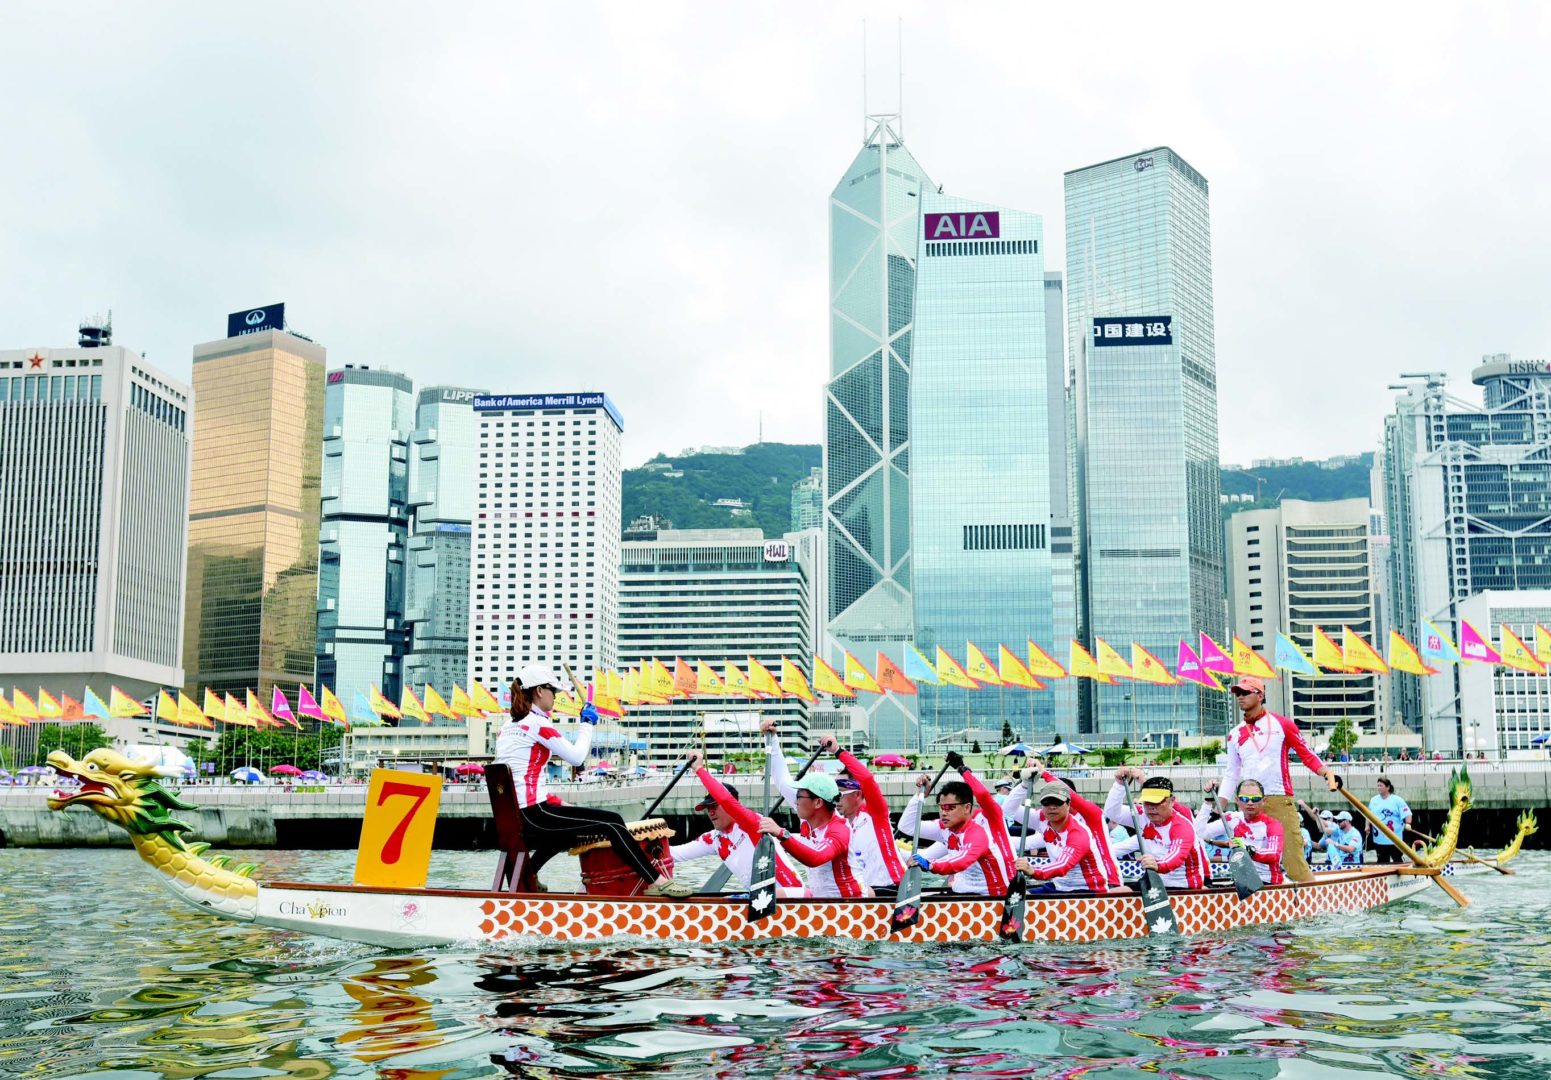 香港龙舟嘉年华于2016年6月10日至12日举行